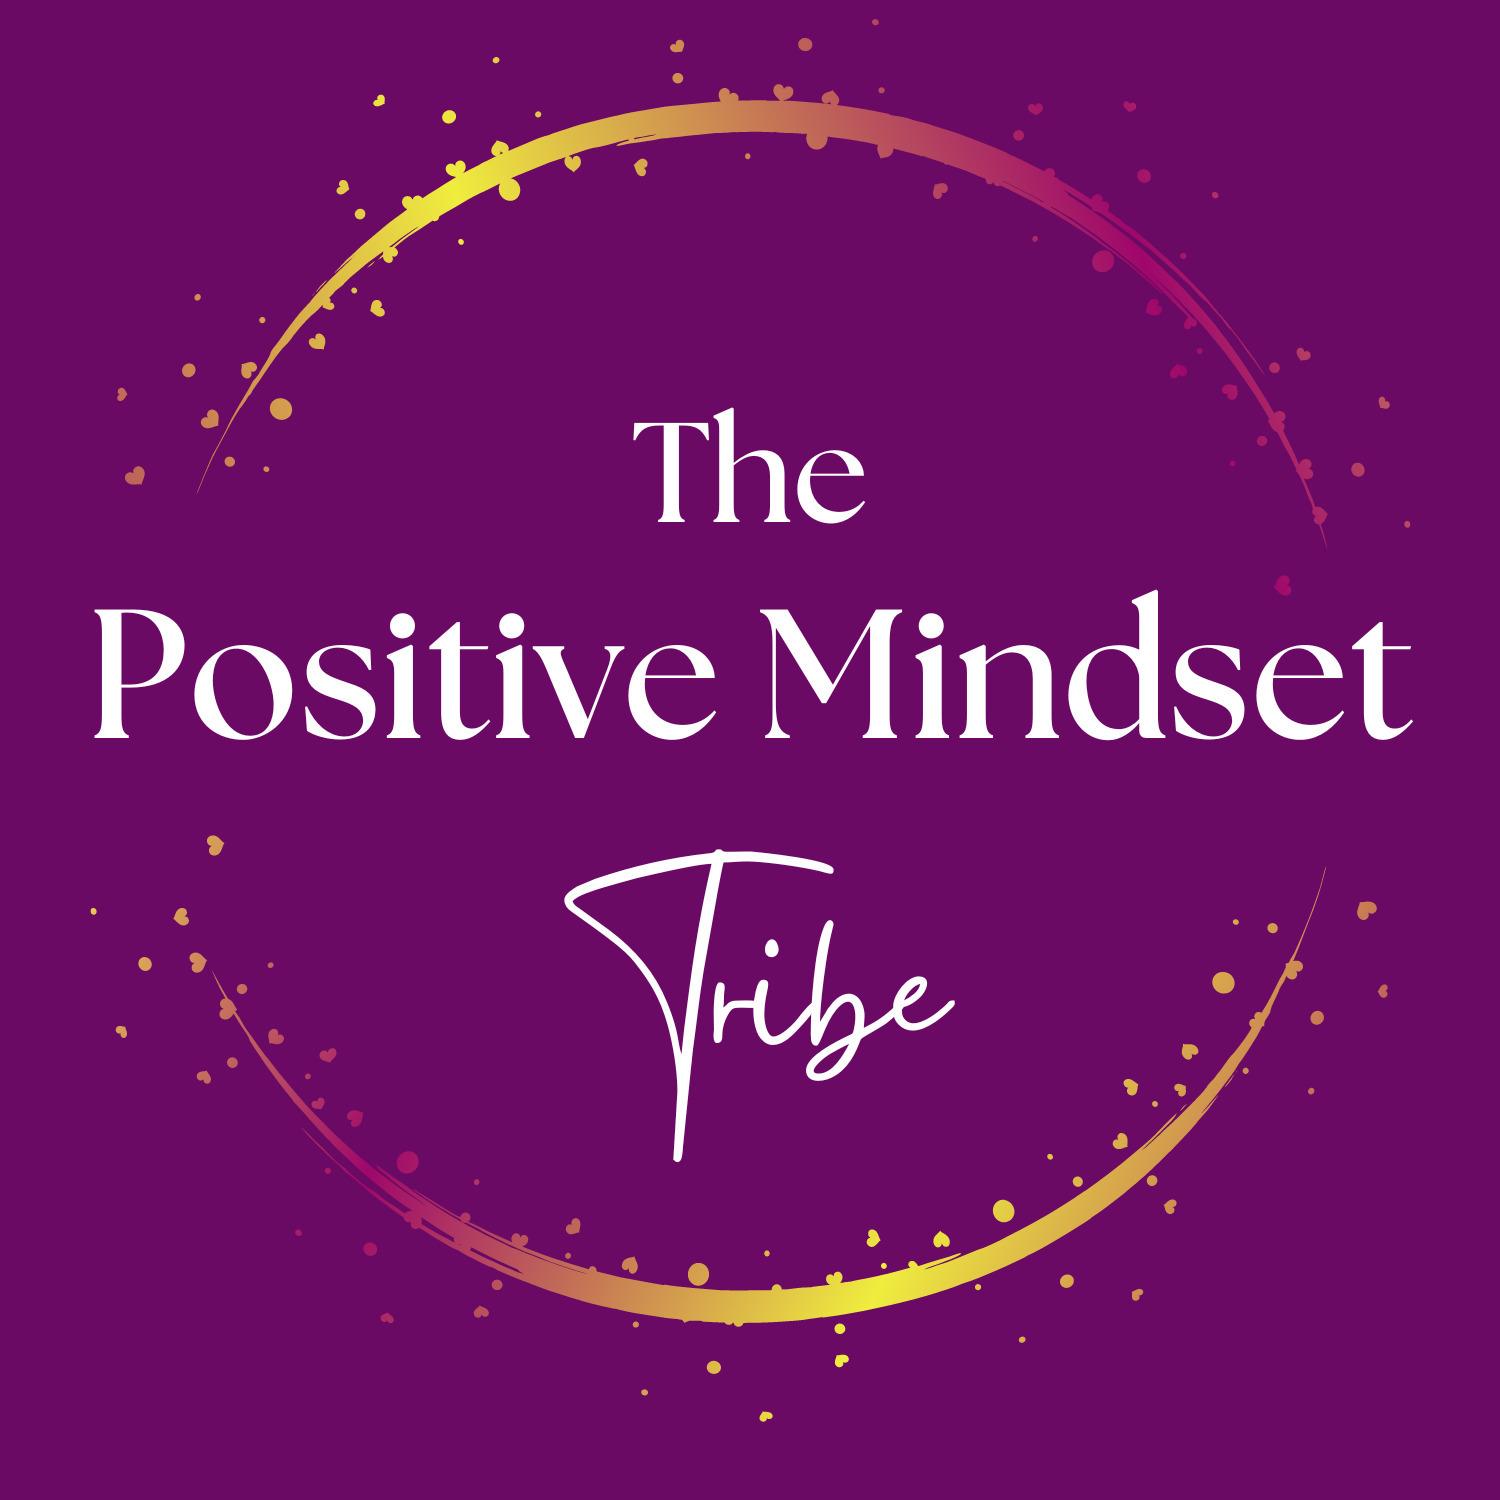 The Positive Mindset Tribe